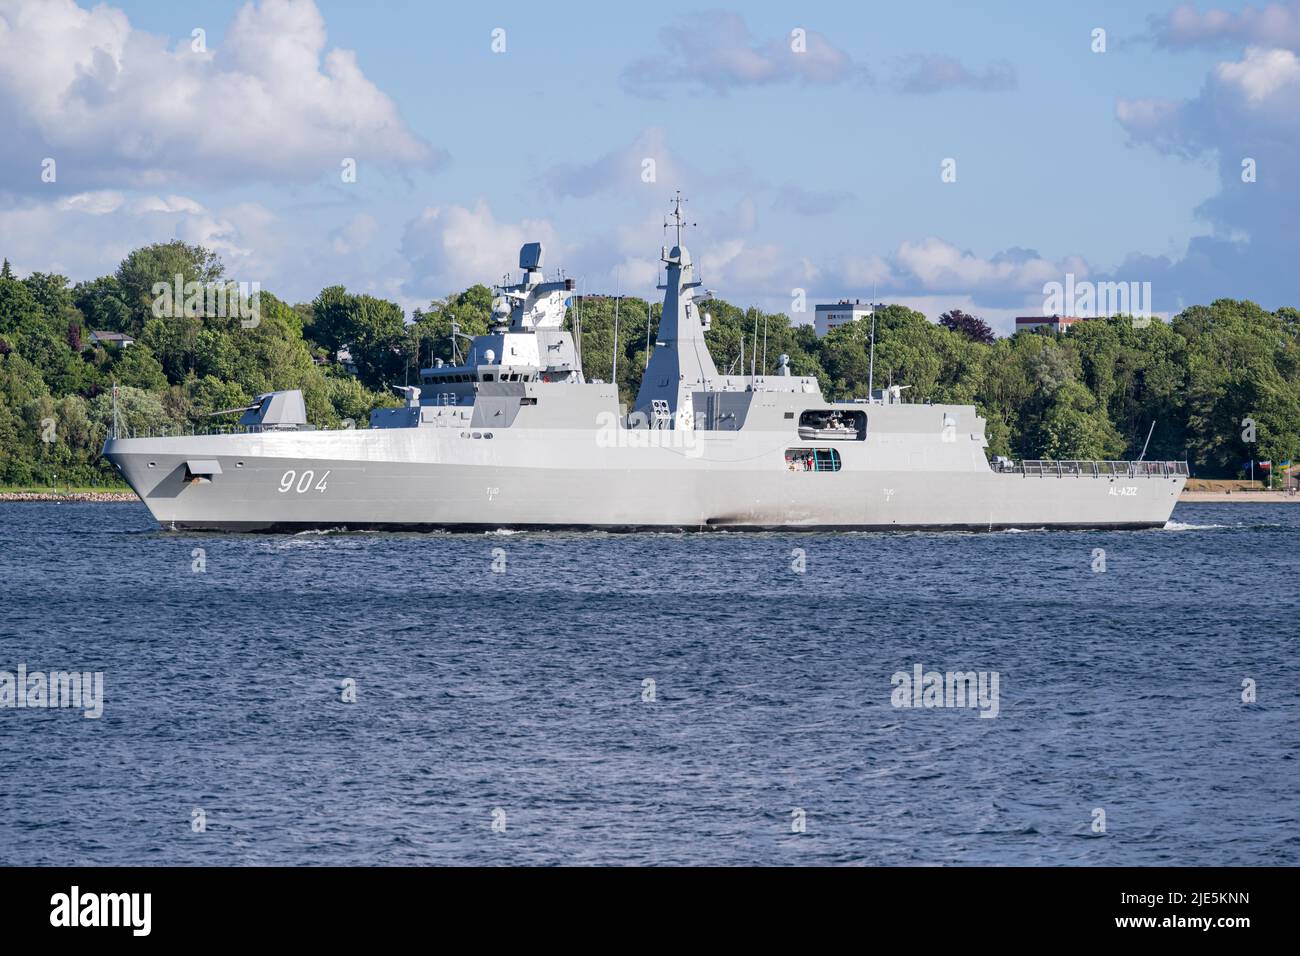 Nuova costruzione Frigate tipo Meko 200 al-AZIZ 904 per la Marina Egiziana in prova in mare nel fiordo di Kiel Foto Stock